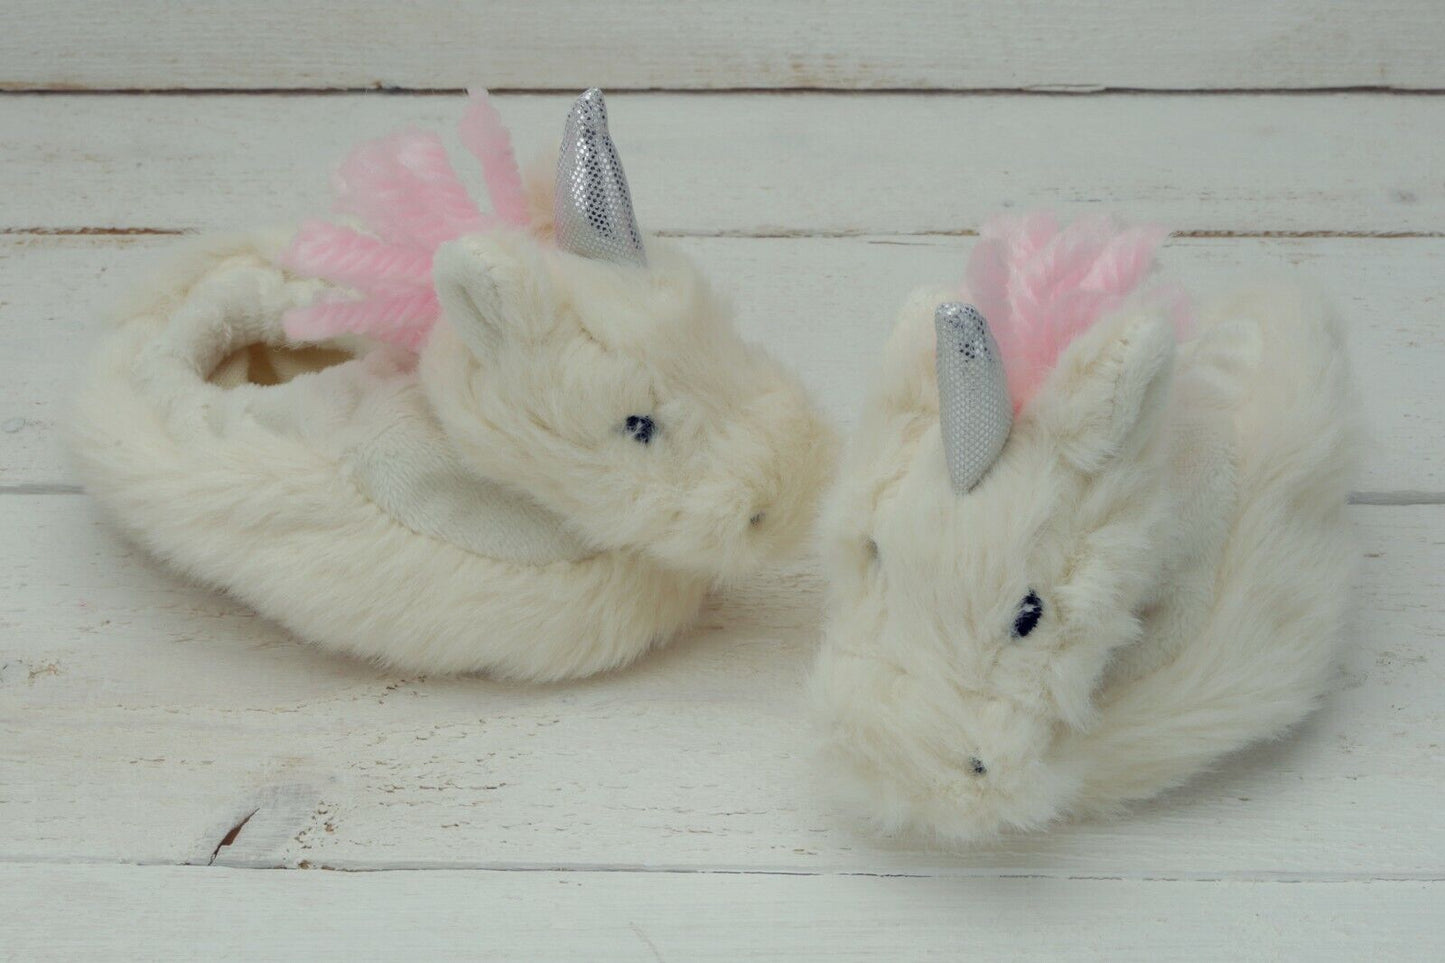 Unicorn Baby Slippers by Jomanda